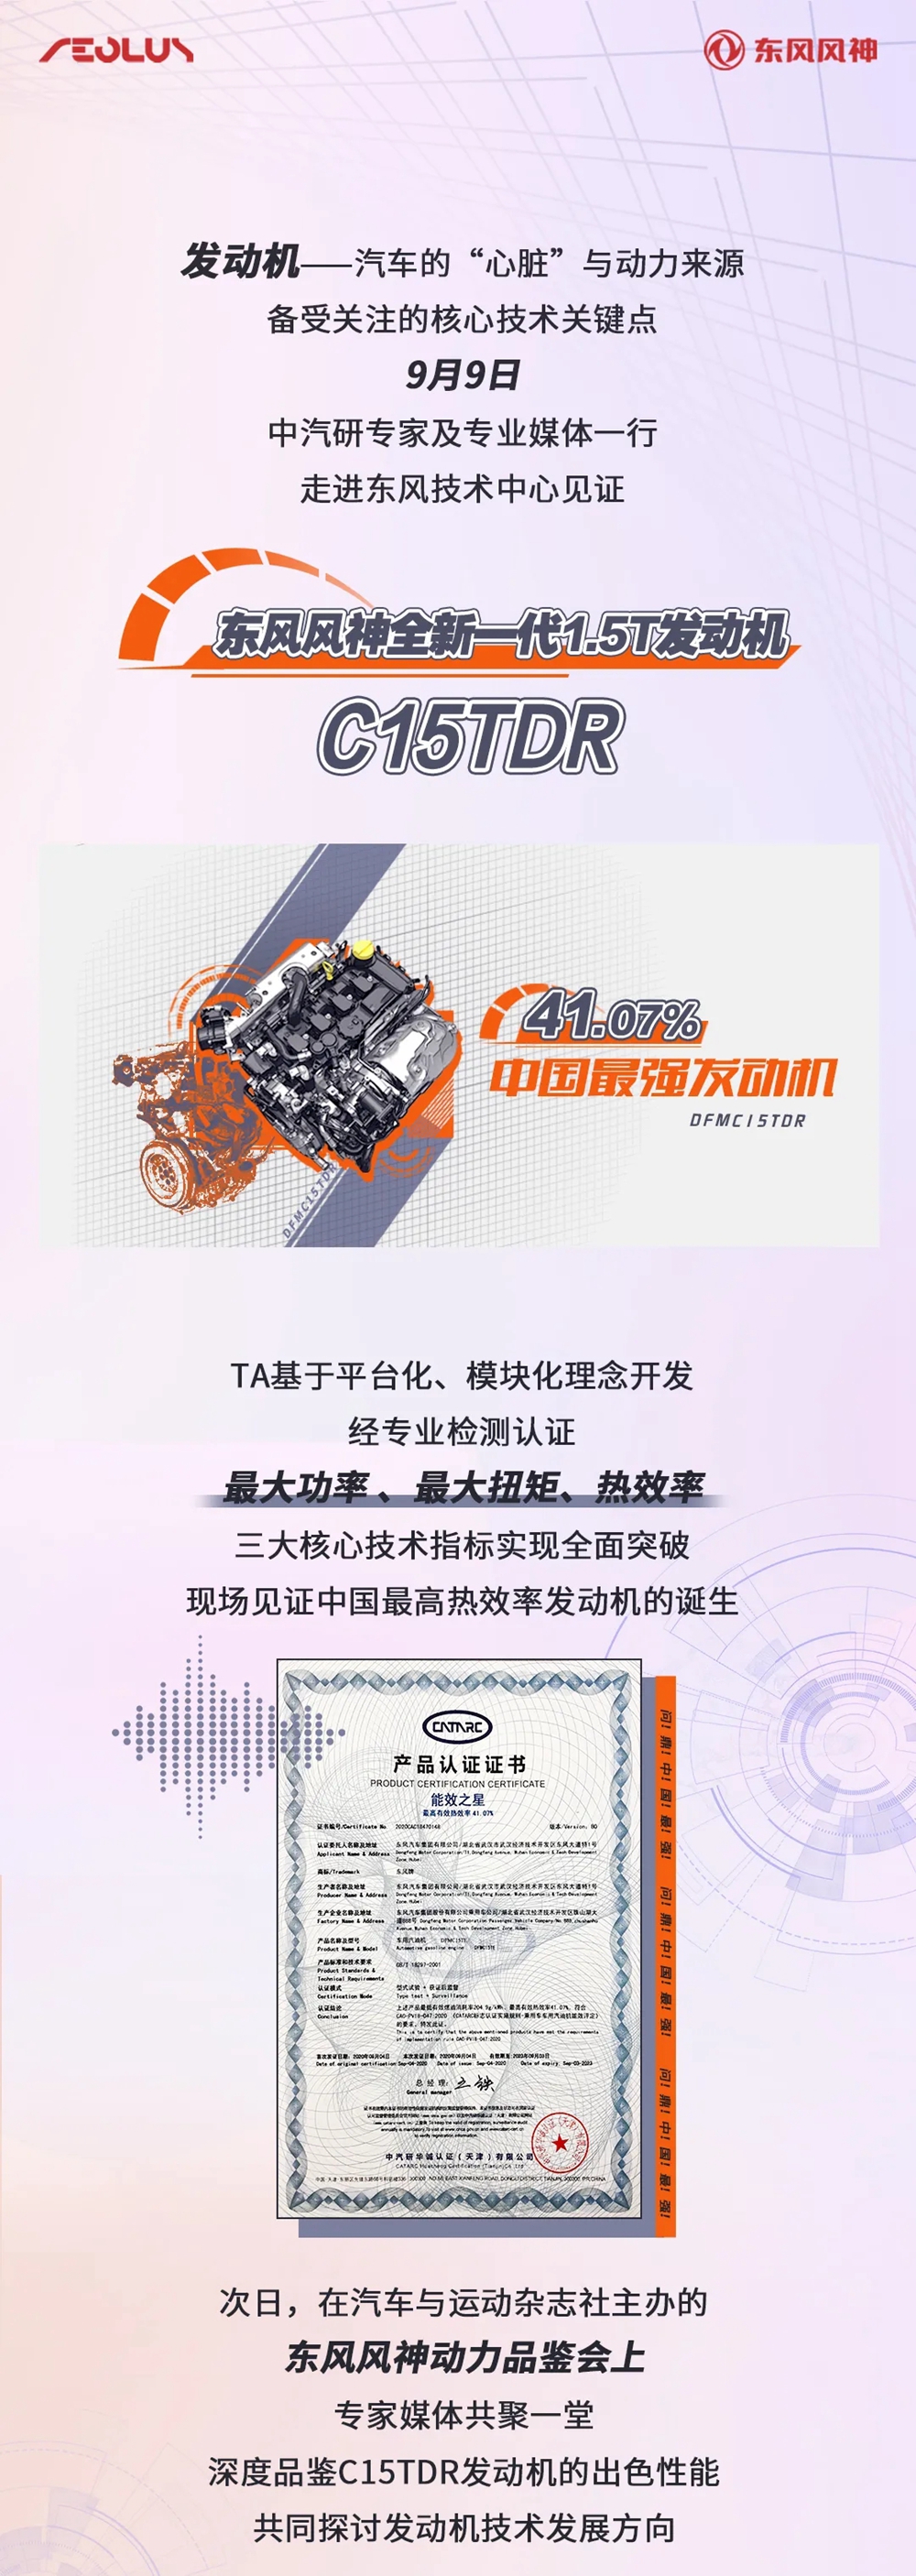 问鼎最强！东风这款发动机刷新中国品牌最高纪录！